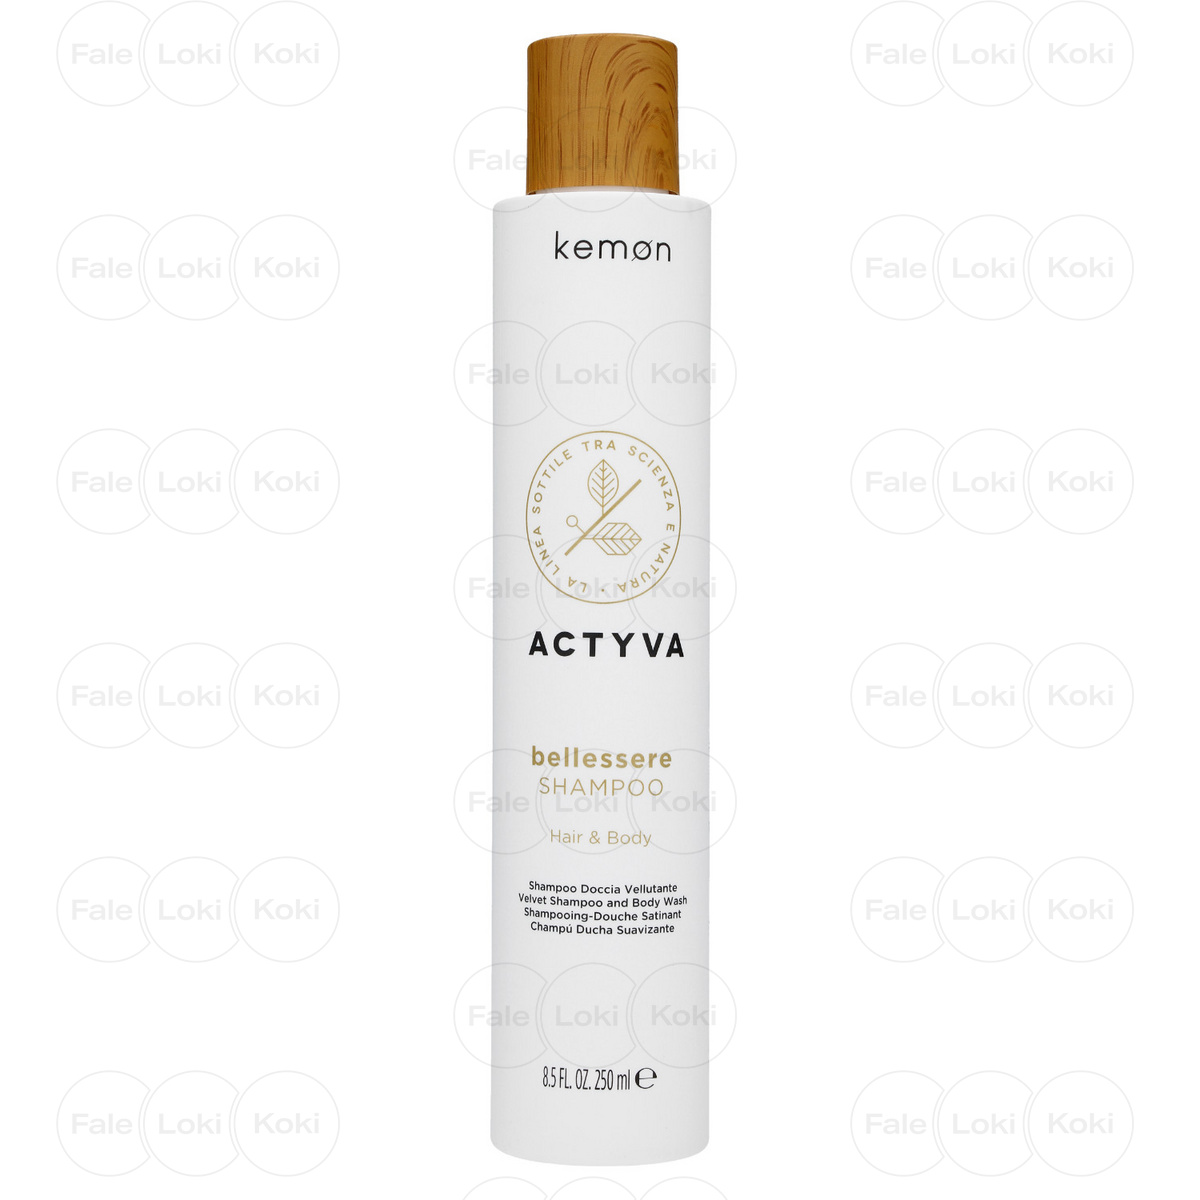 KEMON ACTYVA aksamitny szampon do włosów i ciała BELLESSERE 250 ml